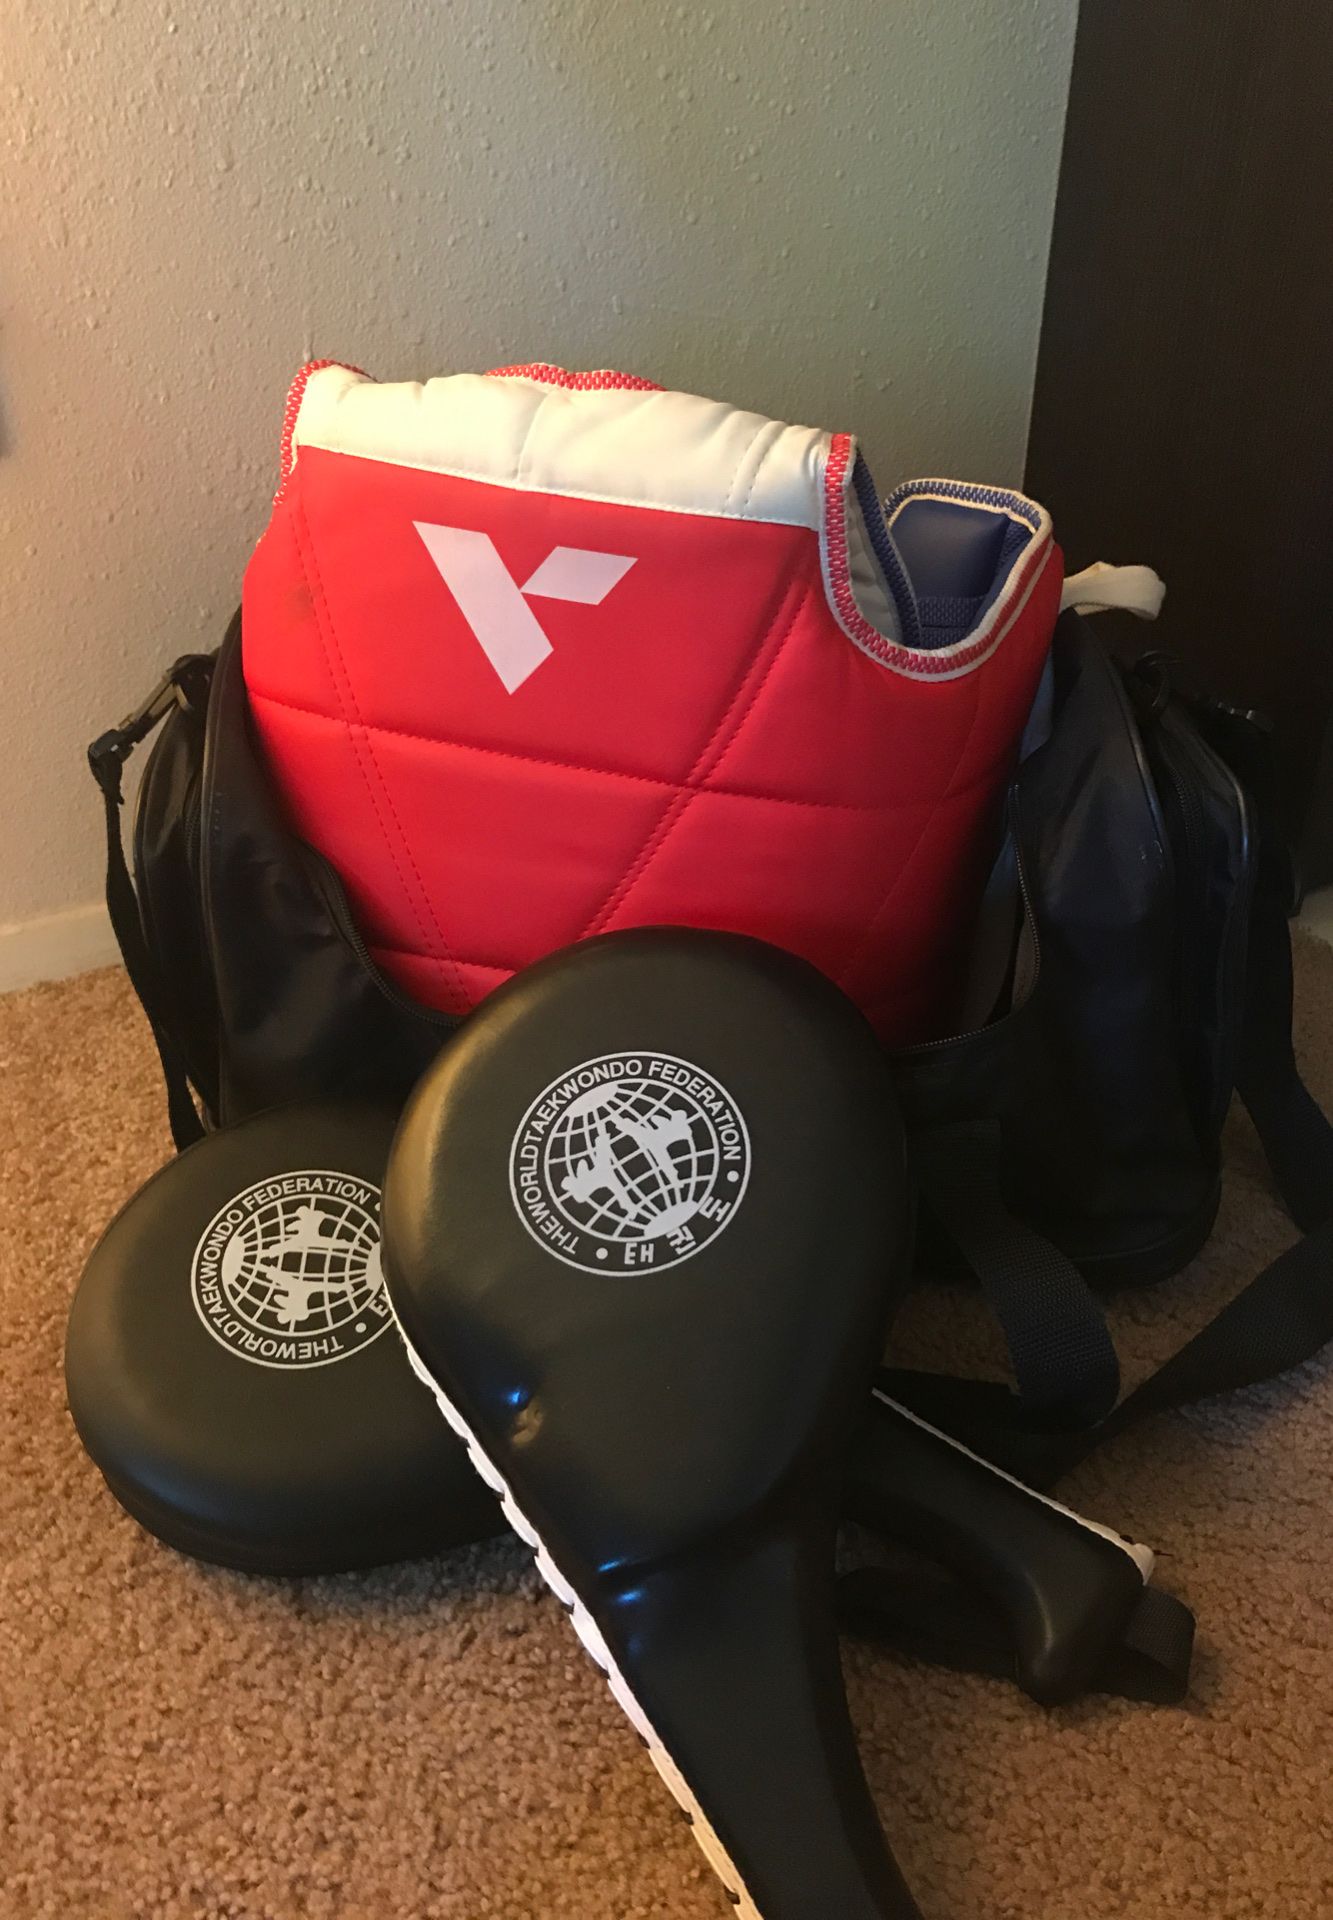 Taekwondo duffle bag/ targets/ sparring gear chest guard